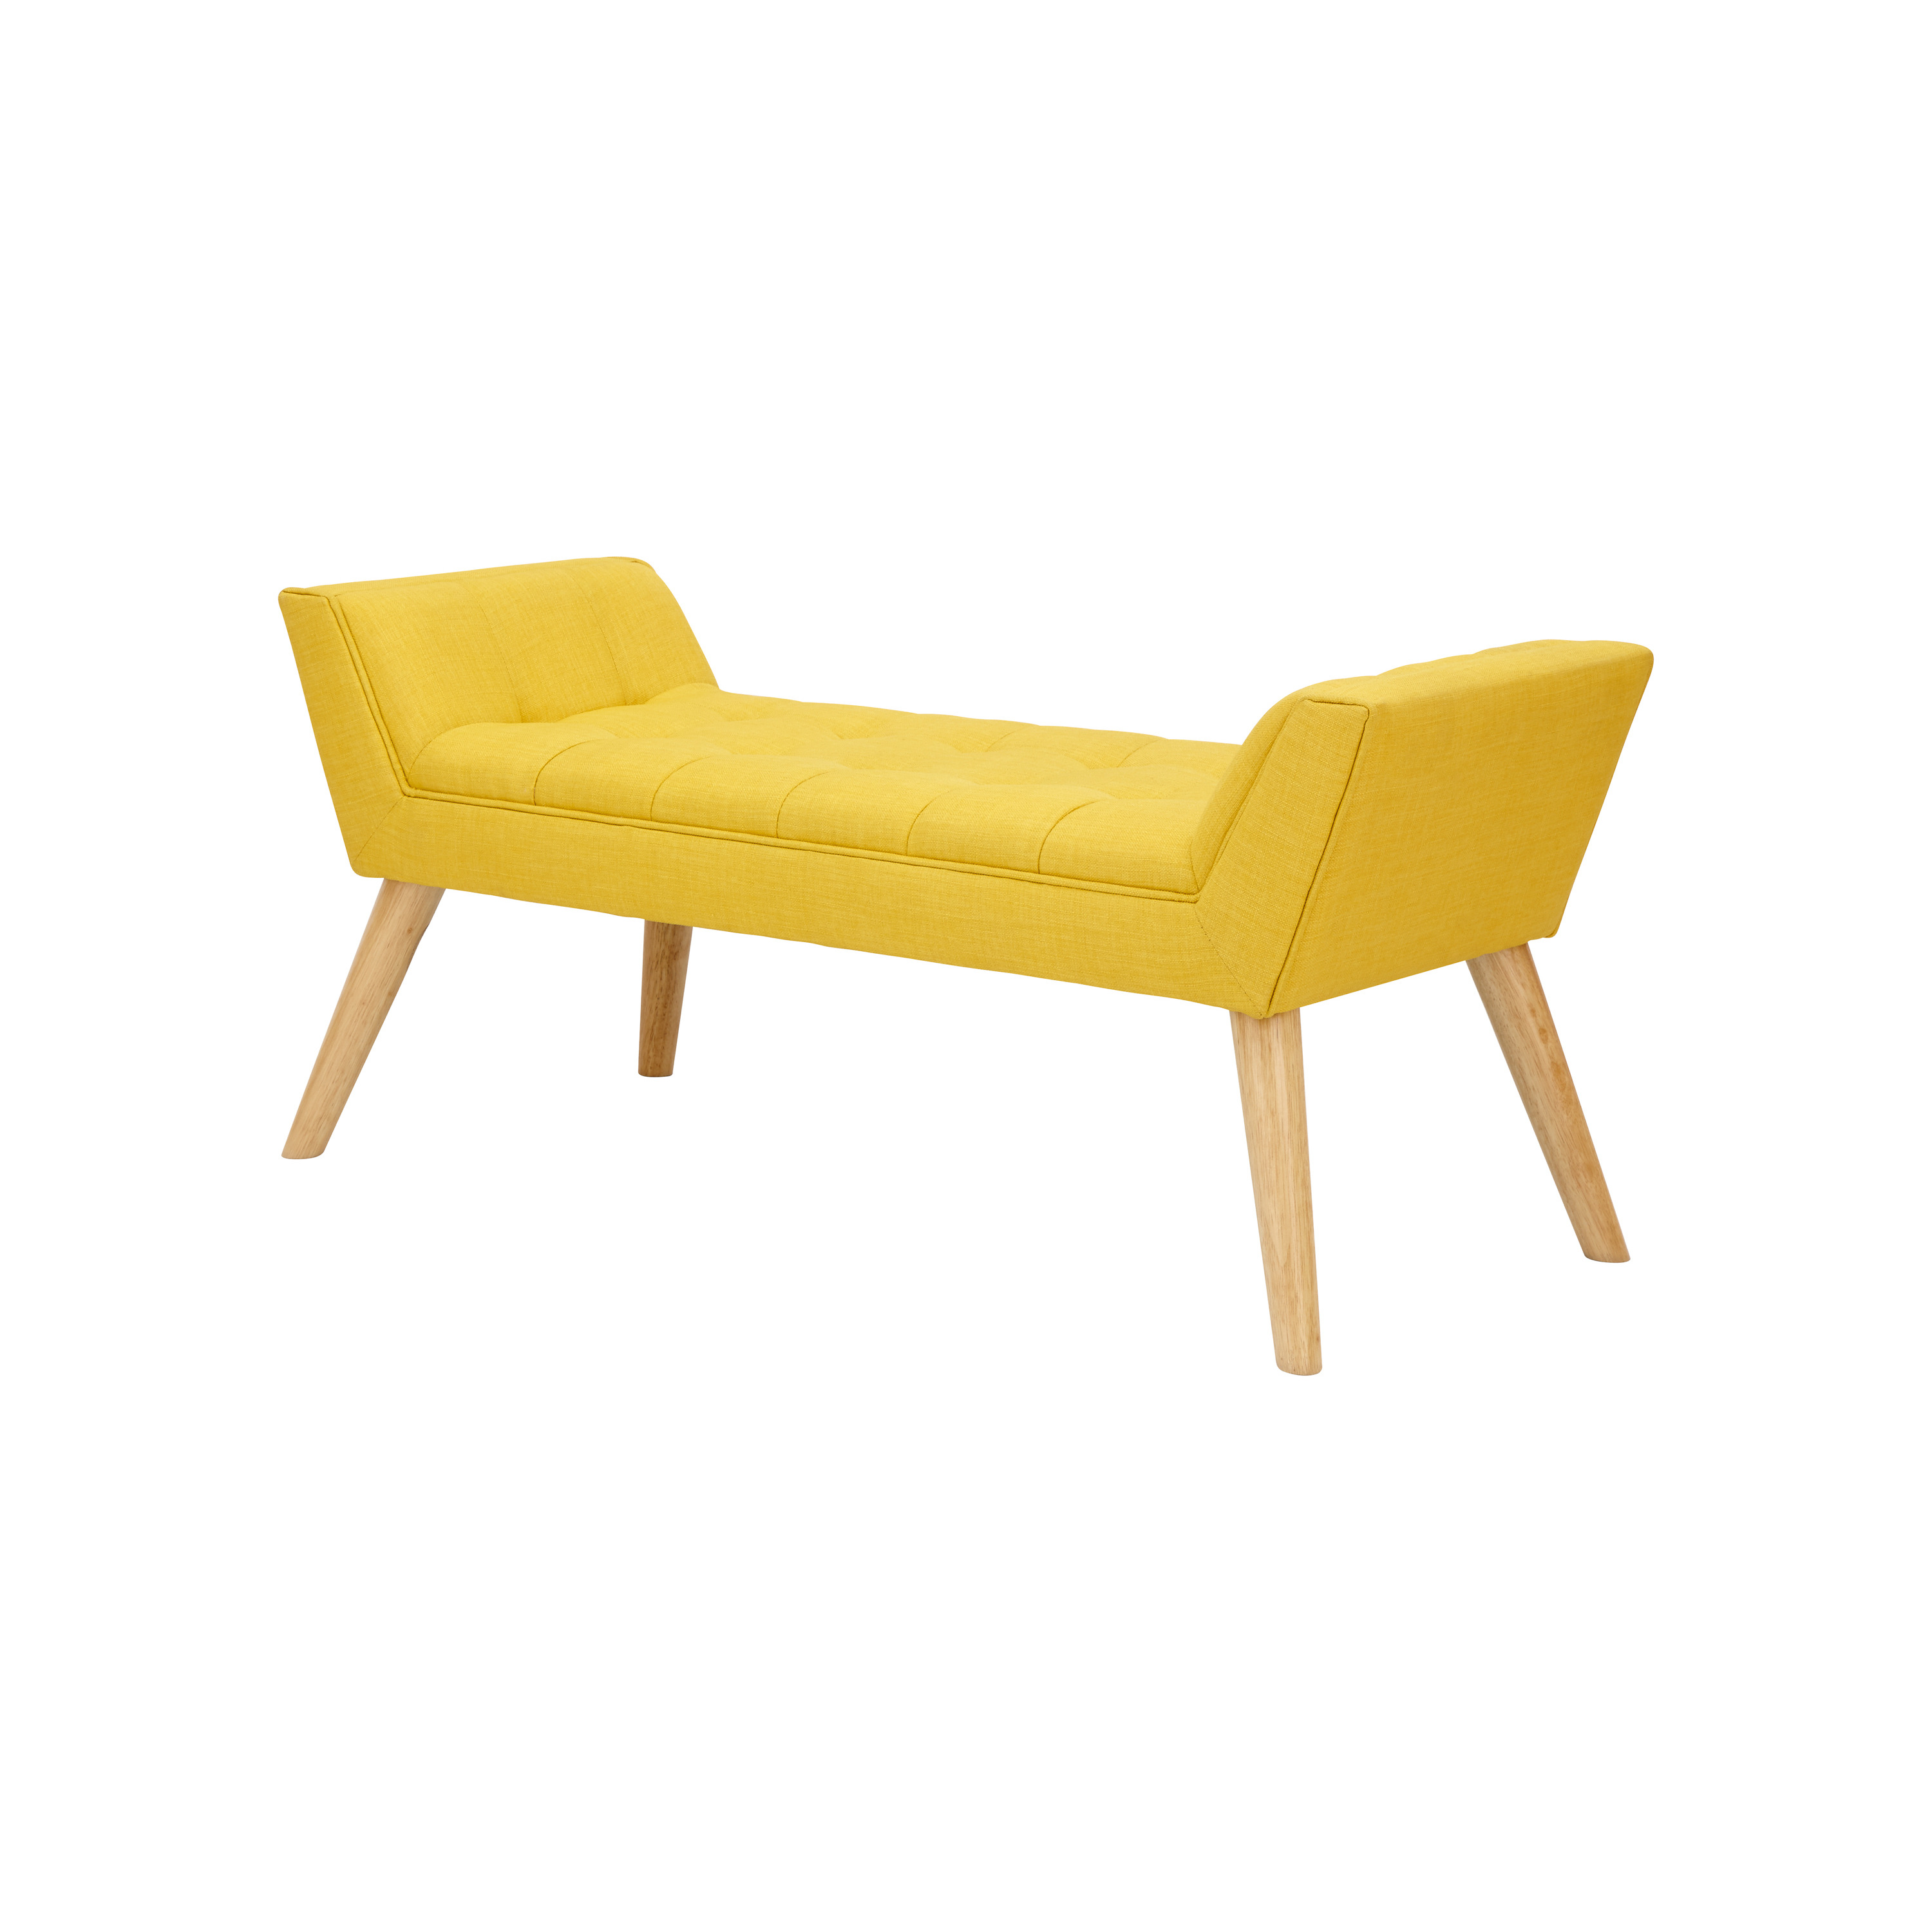 GFW Milan Upholstered Bench Mustard - image 1